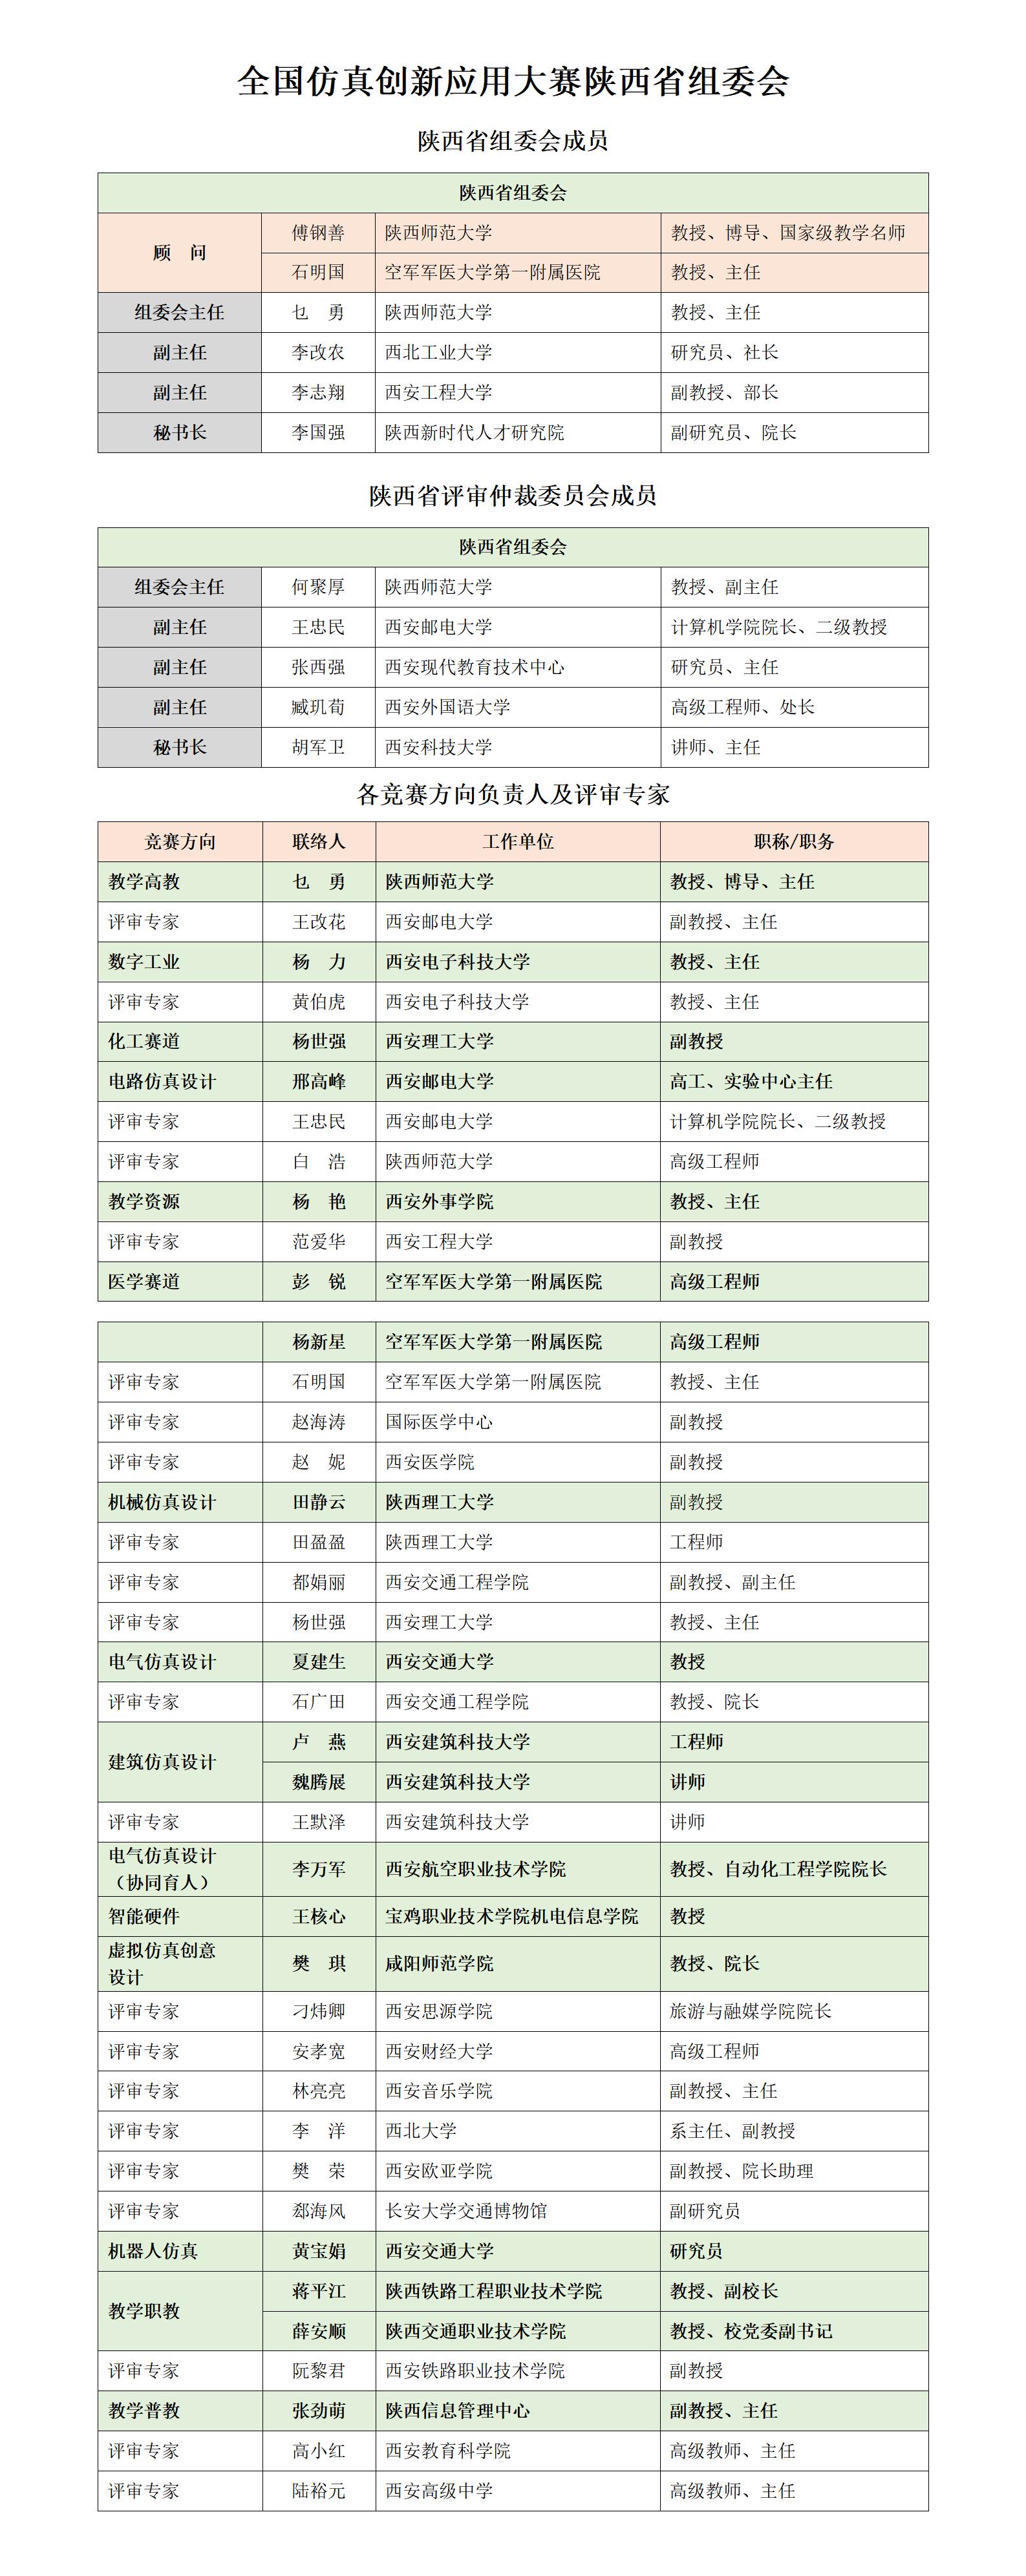 陕西省赛区组委会及专家名录对外公布版_01.jpg